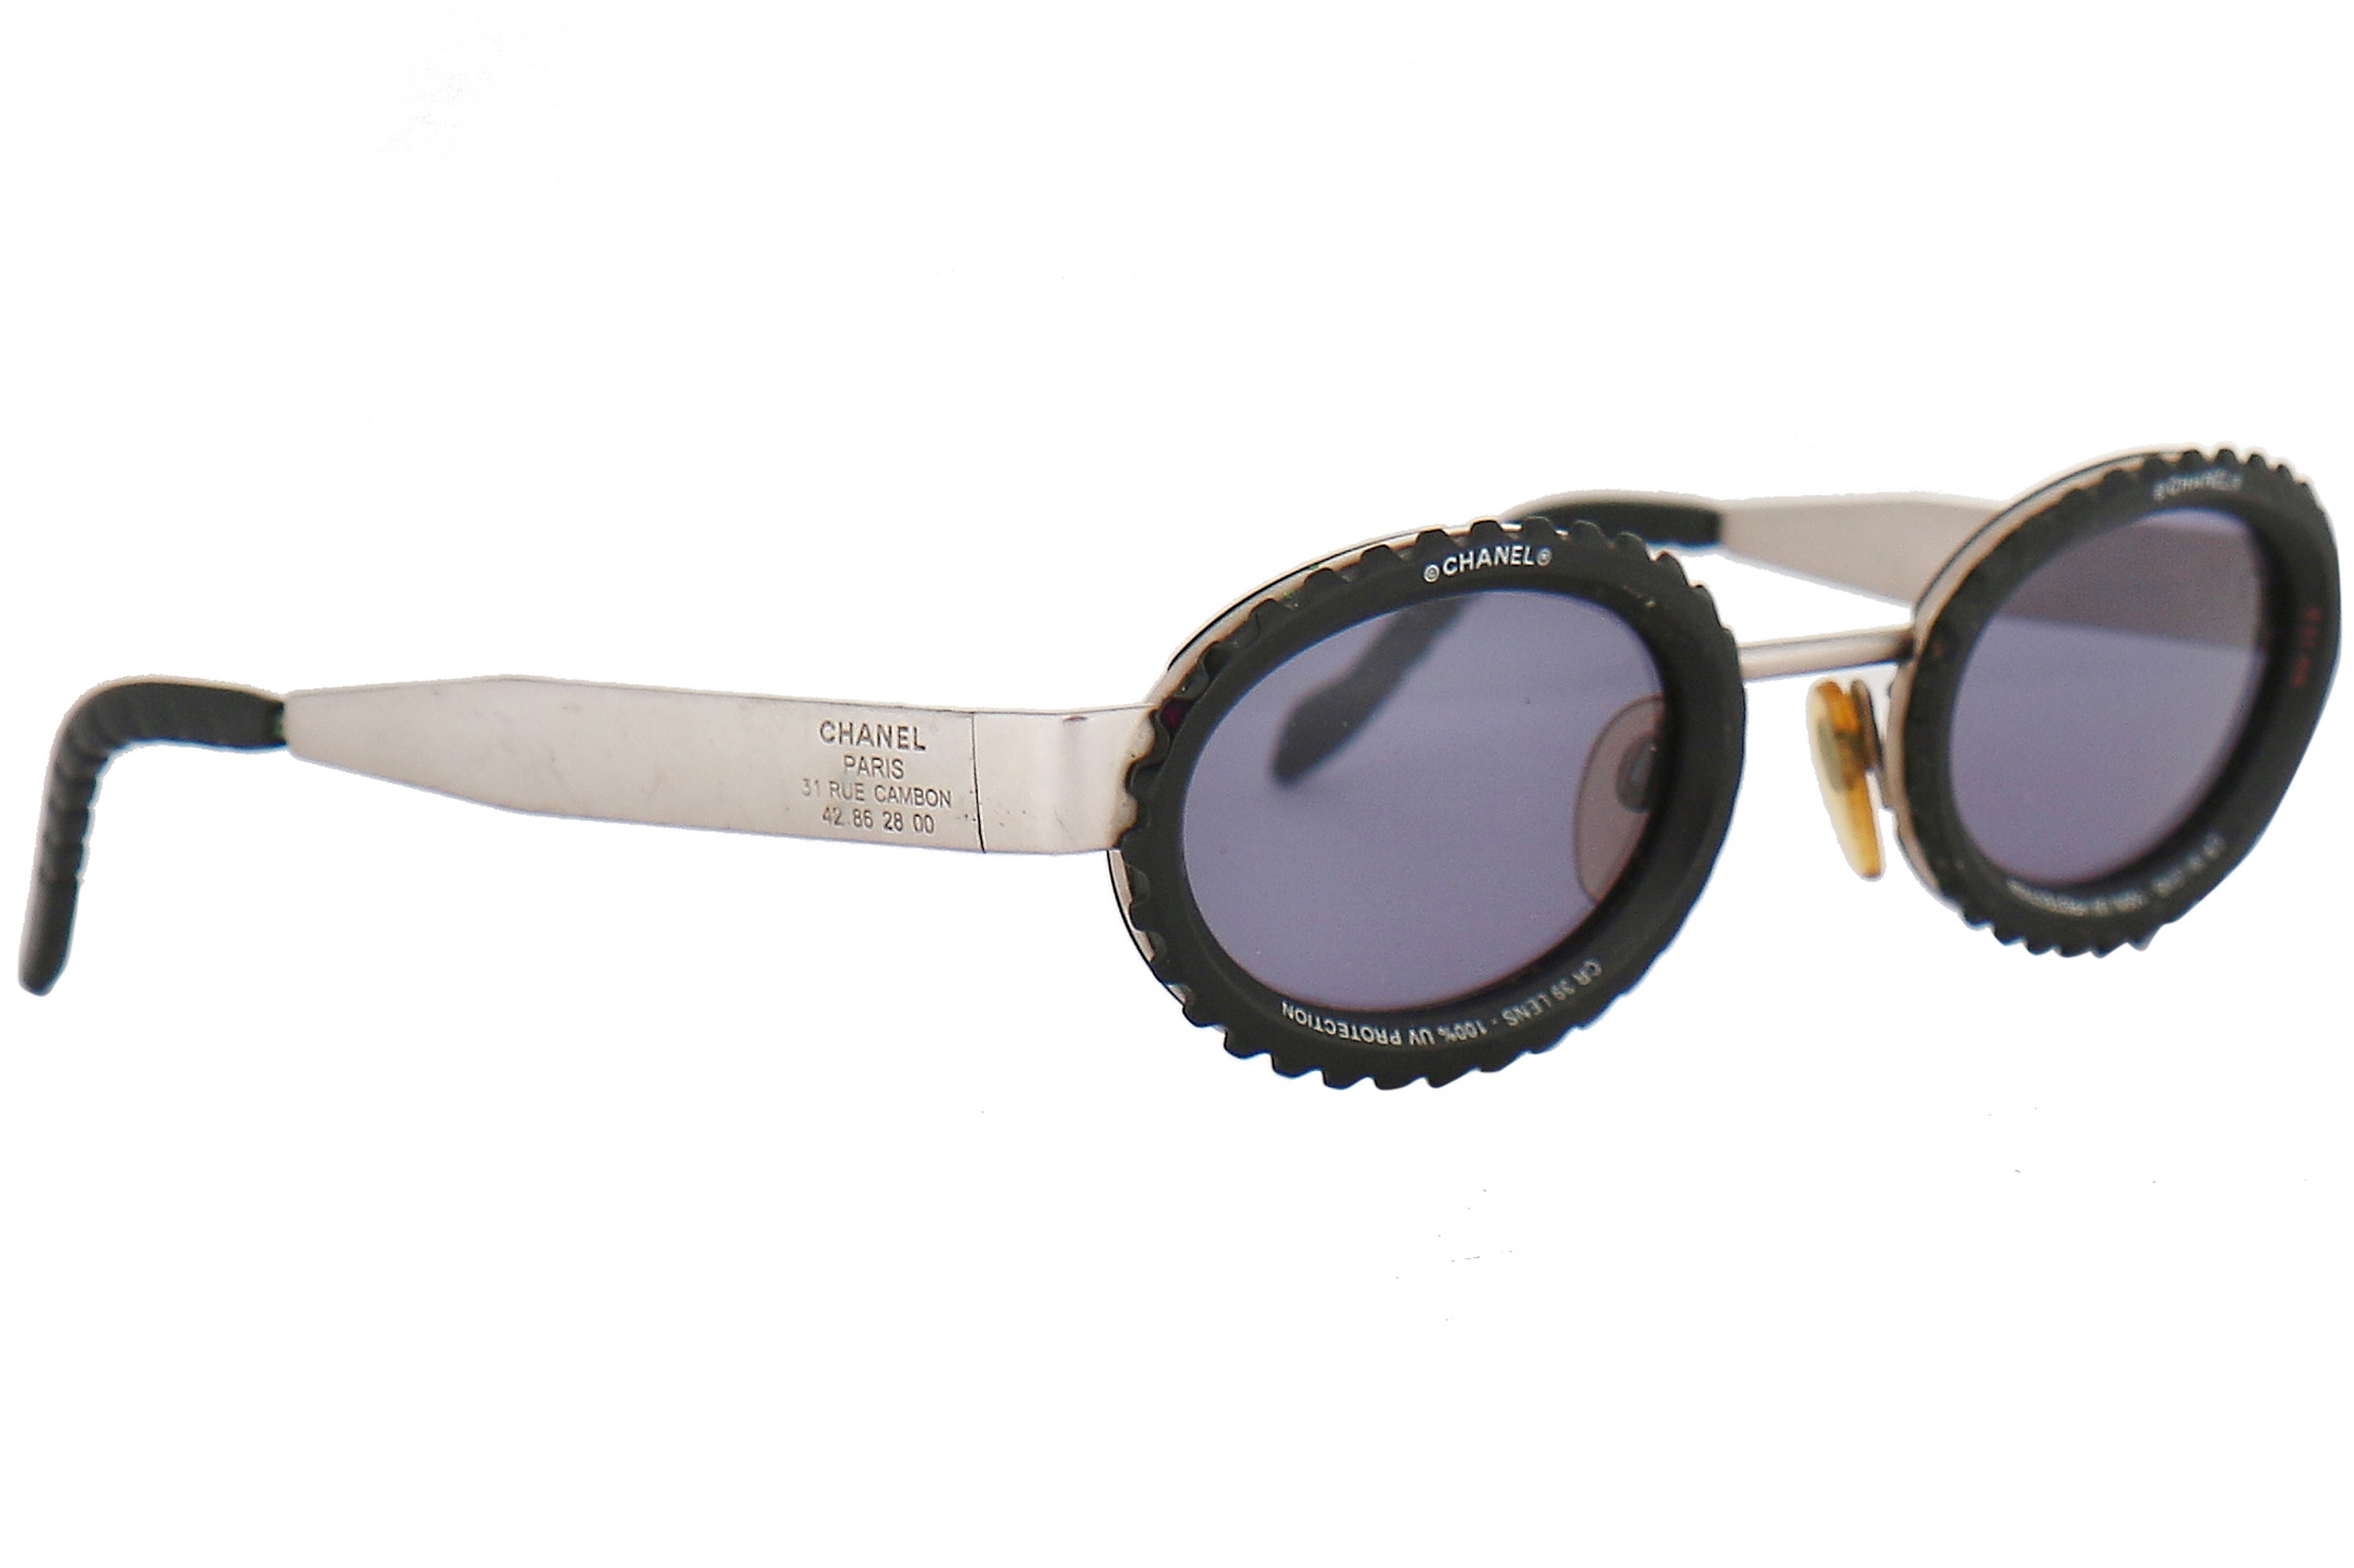 CHANEL, Accessories, Authentic Broken Chanel Sunglasses